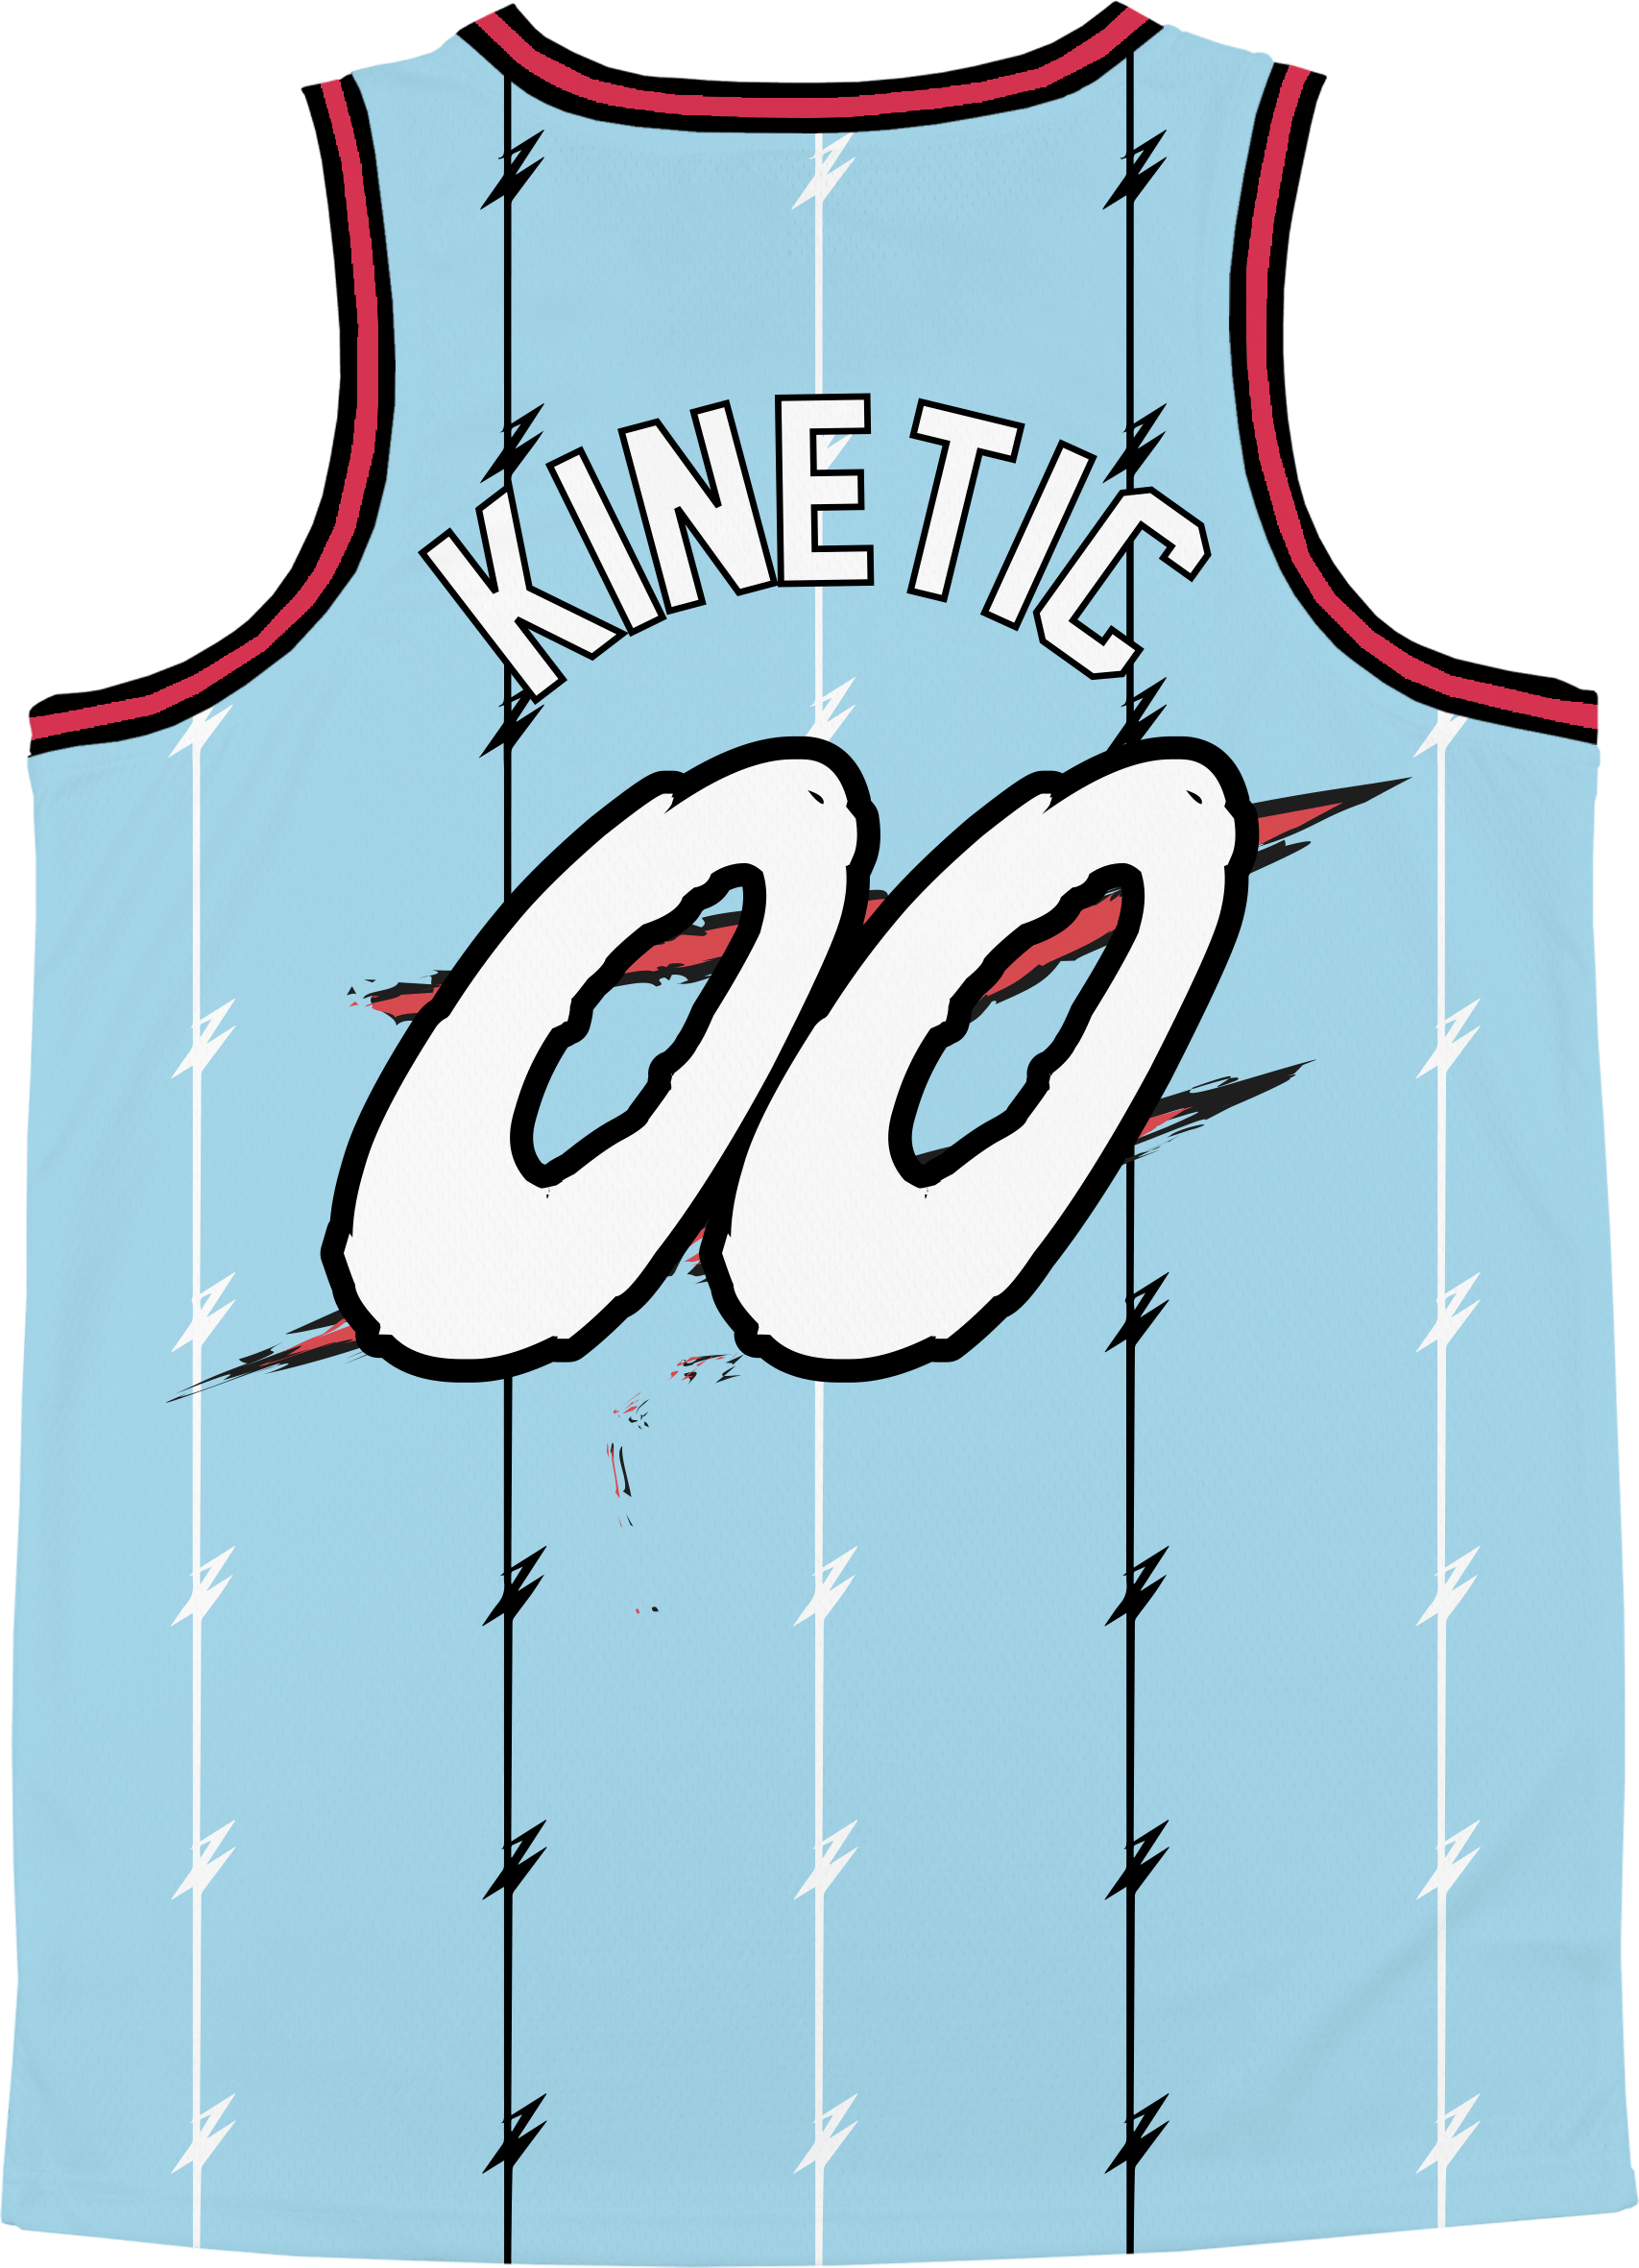 Alpha Sigma Phi - Atlantis Basketball Jersey - Kinetic Society